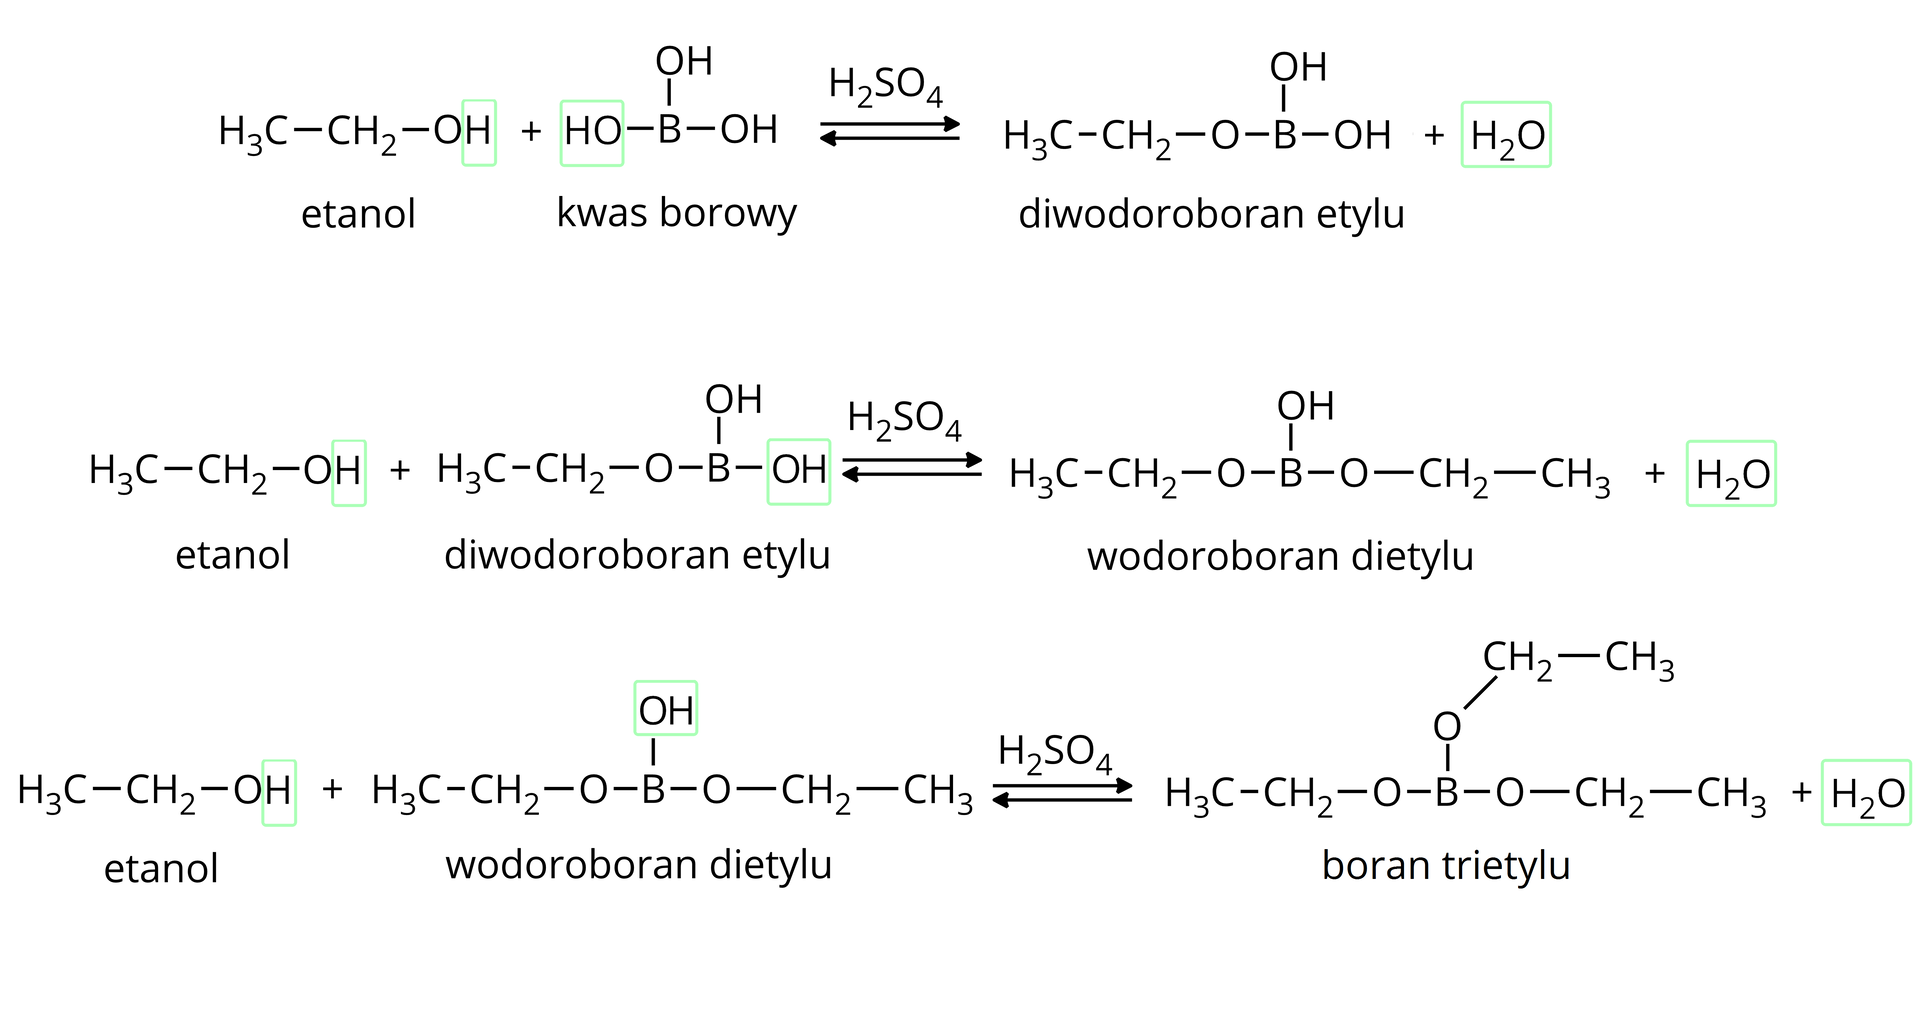 Ilustracja przedstawia trzy równania reakcji otrzymywania estru kwasu borowego. Równanie pierwsze. Cząsteczka etanolu CH3CH2OH, w której zakreślono na niebiesko atom wodoru grupy hydroksylowej w obecności kwasu siarkowego(&lt;math aria‑label="sześć"&gt;VI) reaguje z borowym zbudowanym z atomu boru połączonego z trzema grupami hydroksylowymi OH. Jedna z nich została zakreślona na niebiesko. Powstaje cząsteczka diwodoroboranu etylu zbudowanego z atomu boru połączonego z dwiema grupami hydroksylowymi OH oraz z grupą CH3CH2O, dodać cząsteczka wody H2O zakreślona na niebiesko. Równanie drugie. Cząsteczka etanolu CH3CH2OH, w której zakreślono na niebiesko atom wodoru grupy hydroksylowej w obecności kwasu siarkowego(&lt;math aria‑label="sześć"&gt;VI) reaguje z diboranem etylu zbudowanym z atomu boru połączonego z grupą CH3CH2O oraz z dwiema grupami hydroksylowymi OH, z których jedna zakreślona jest na niebiesko. Powstaje wodoroboran dietylu zbudowany z atomu boru połączonego z dwiema grupami CH3CH2O oraz z grupą OH, dodać cząsteczka wody H2O zakreślona na niebiesko. Równanie trzecie. Cząsteczka etanolu CH3CH2OH, w której zakreślono na niebiesko atom wodoru grupy hydroksylowej w obecności kwasu siarkowego(&lt;math aria‑label="sześć"&gt;VI) reaguje z cząsteczką wodoroboranu dietylu zbudowanego z boru połączonego z dwiema grupami CH3CH2O oraz z grupą OH. Powstaje cząsteczka boranu trietylu zbudowanego z atomu boru połączonego z trzema grupami CH3CH2O, dodać cząsteczka wody H2O zakreślona na niebiesko.